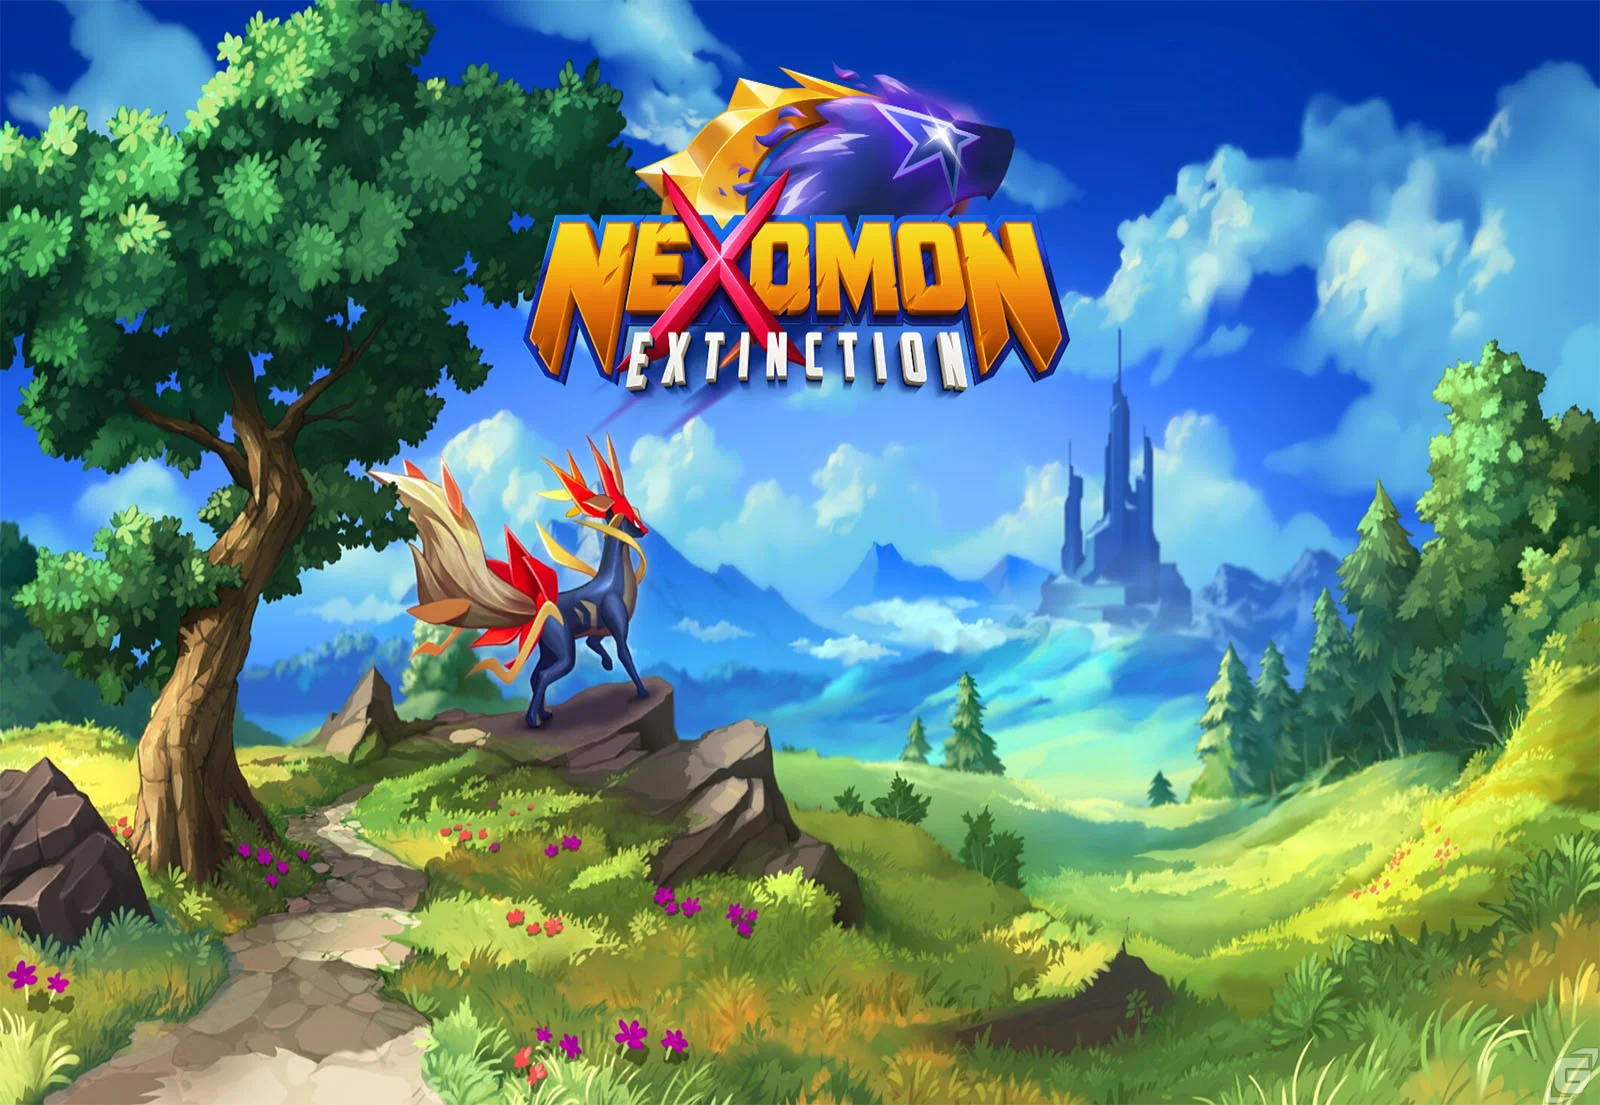 Nexomon: Extinction  kommt Ende August!